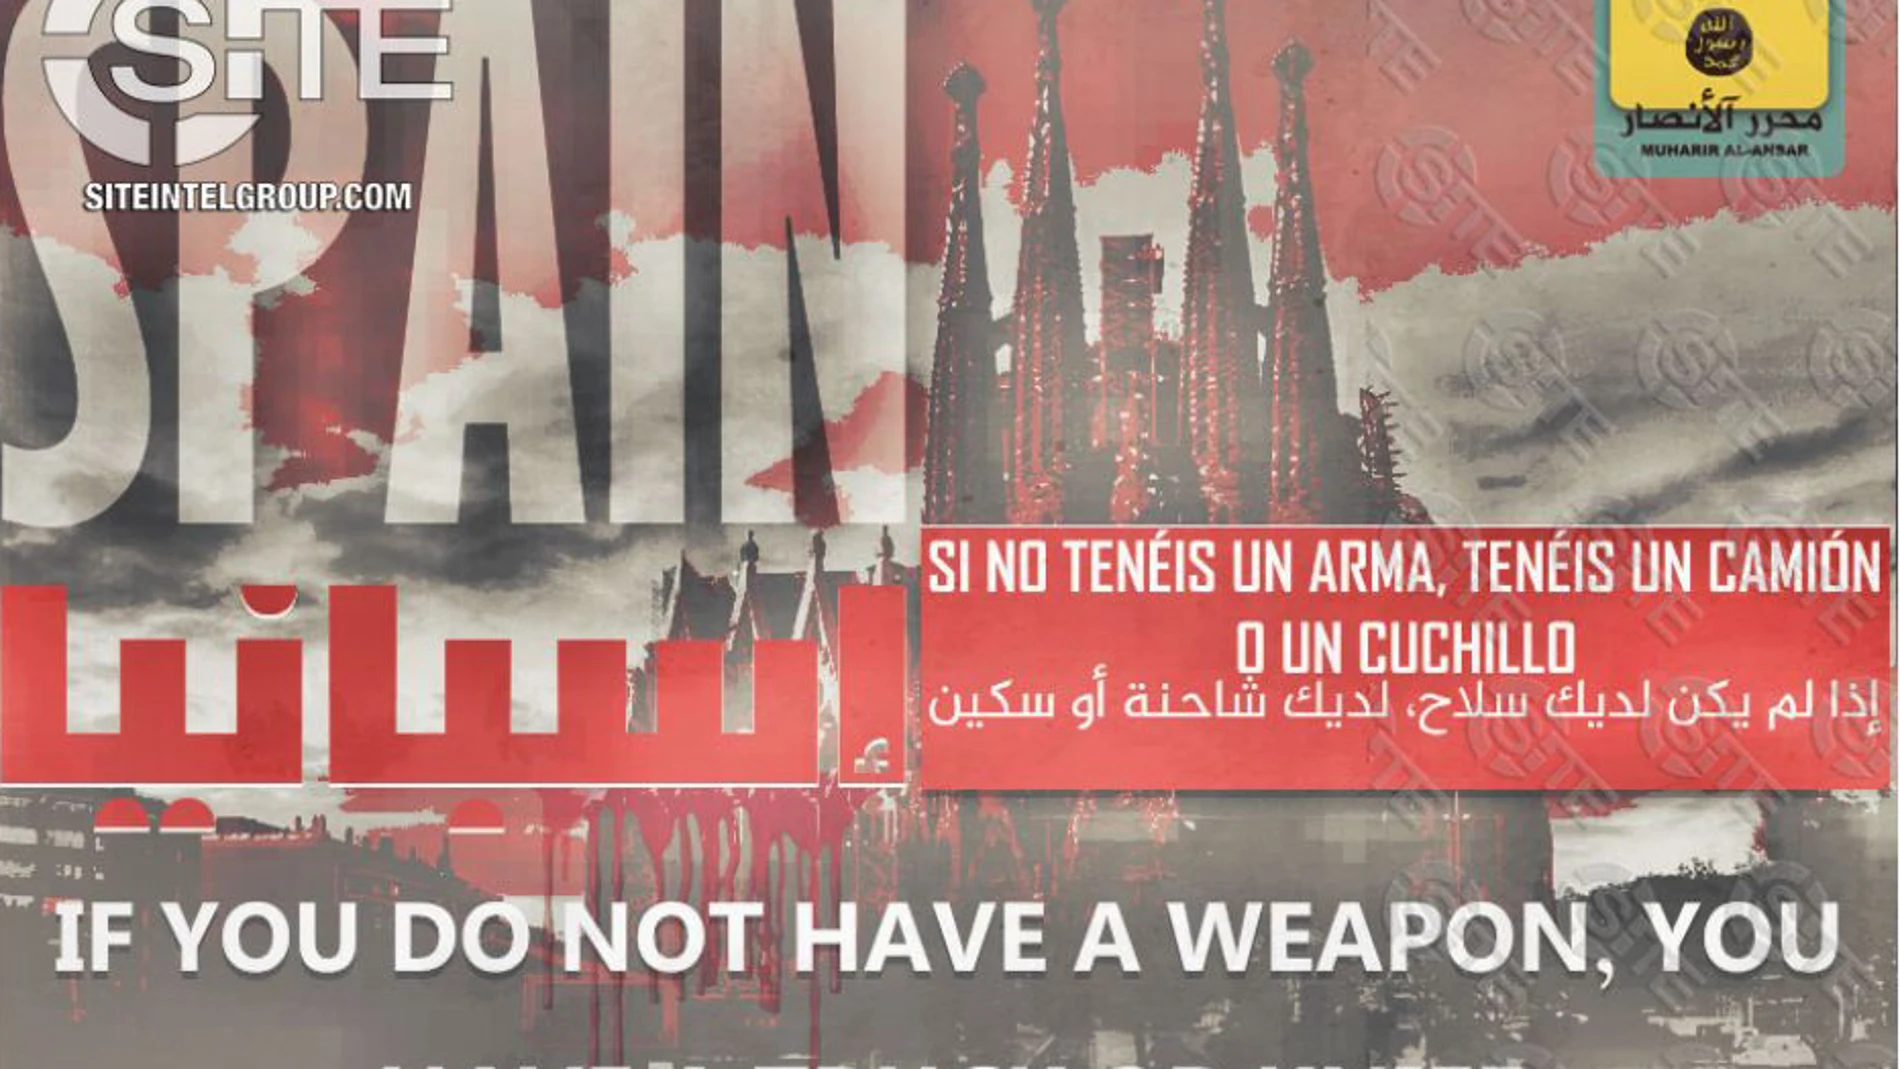 Imagen del cartel en el que aparece la Sagrada Familia